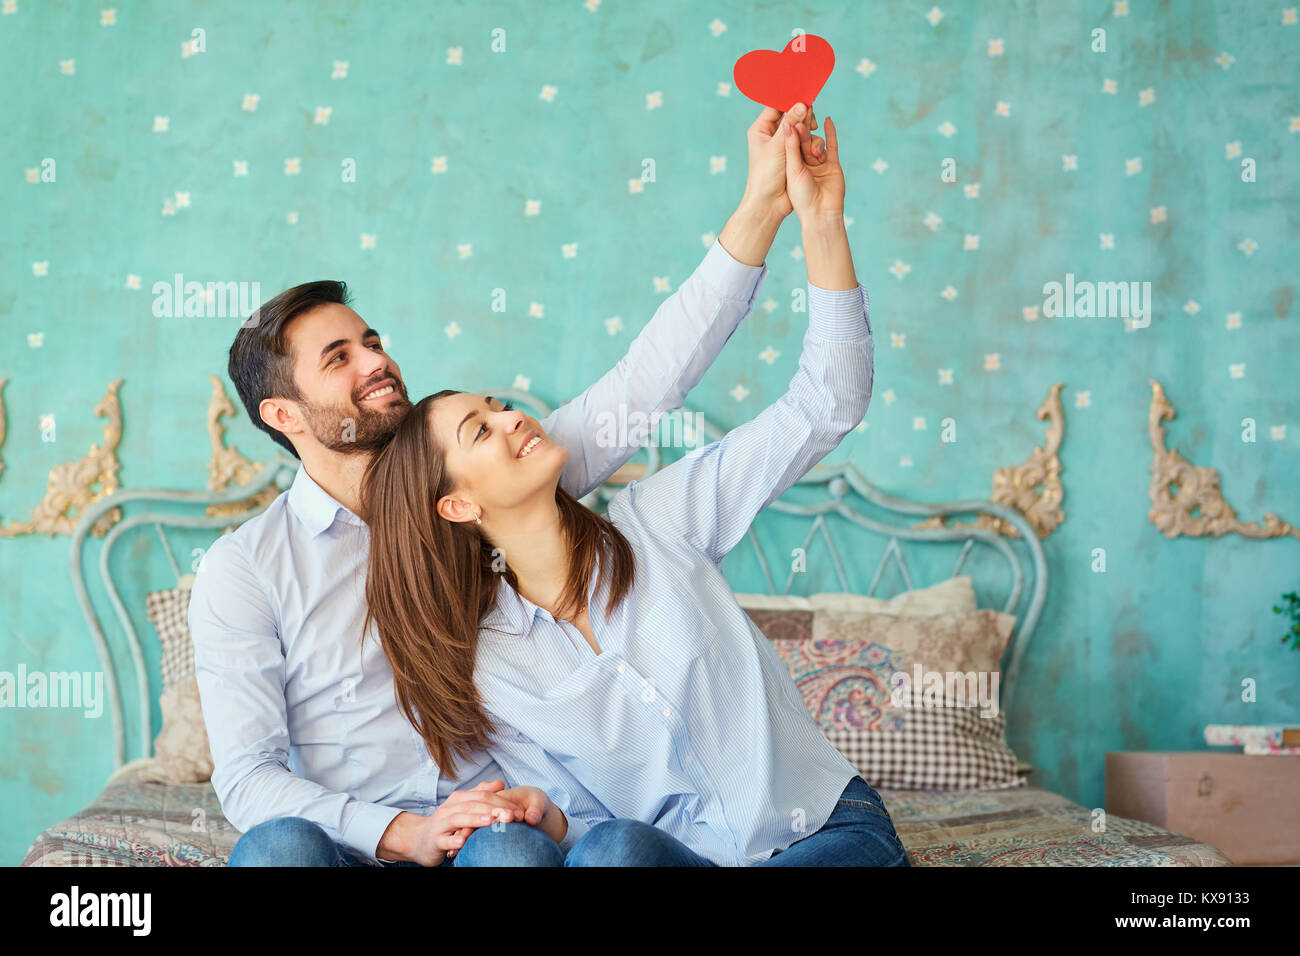 Ein liebevolles Paar mit einem roten Herzen. Stockfoto